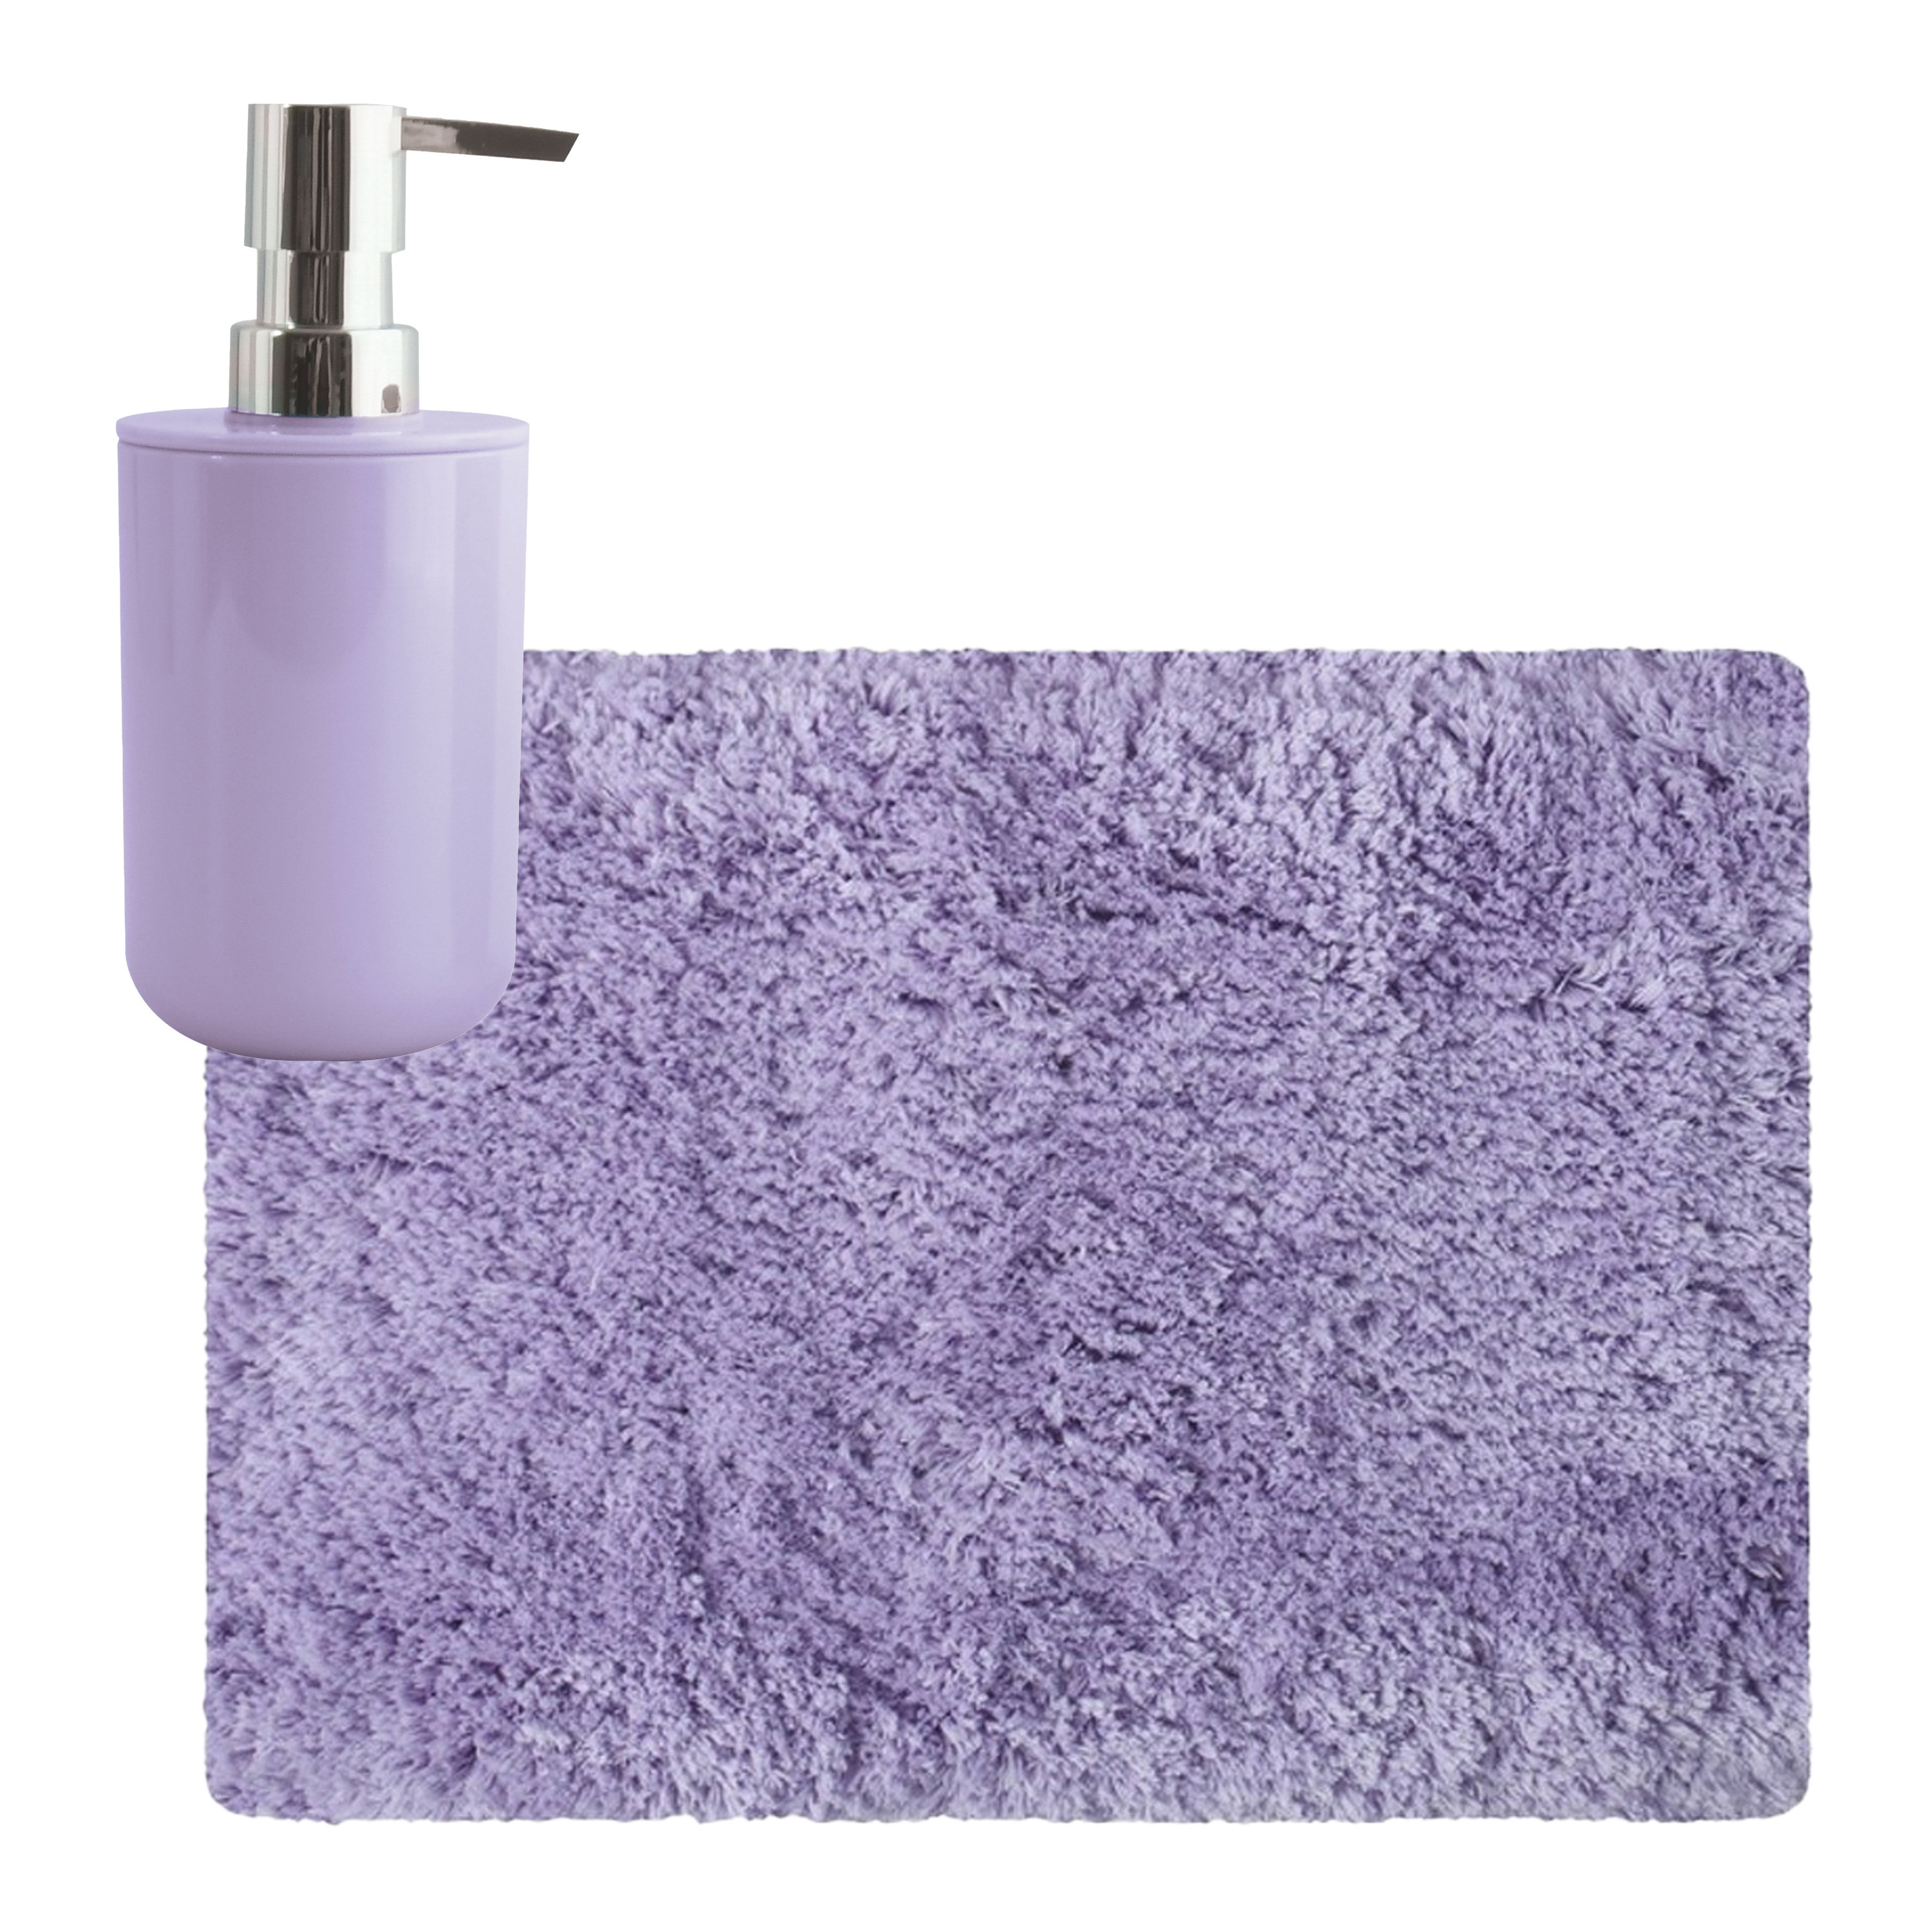 MSV badkamer droogloop tapijt Langharig 50 x 70 cm incl zeeppompje zelfde kleur lila paars